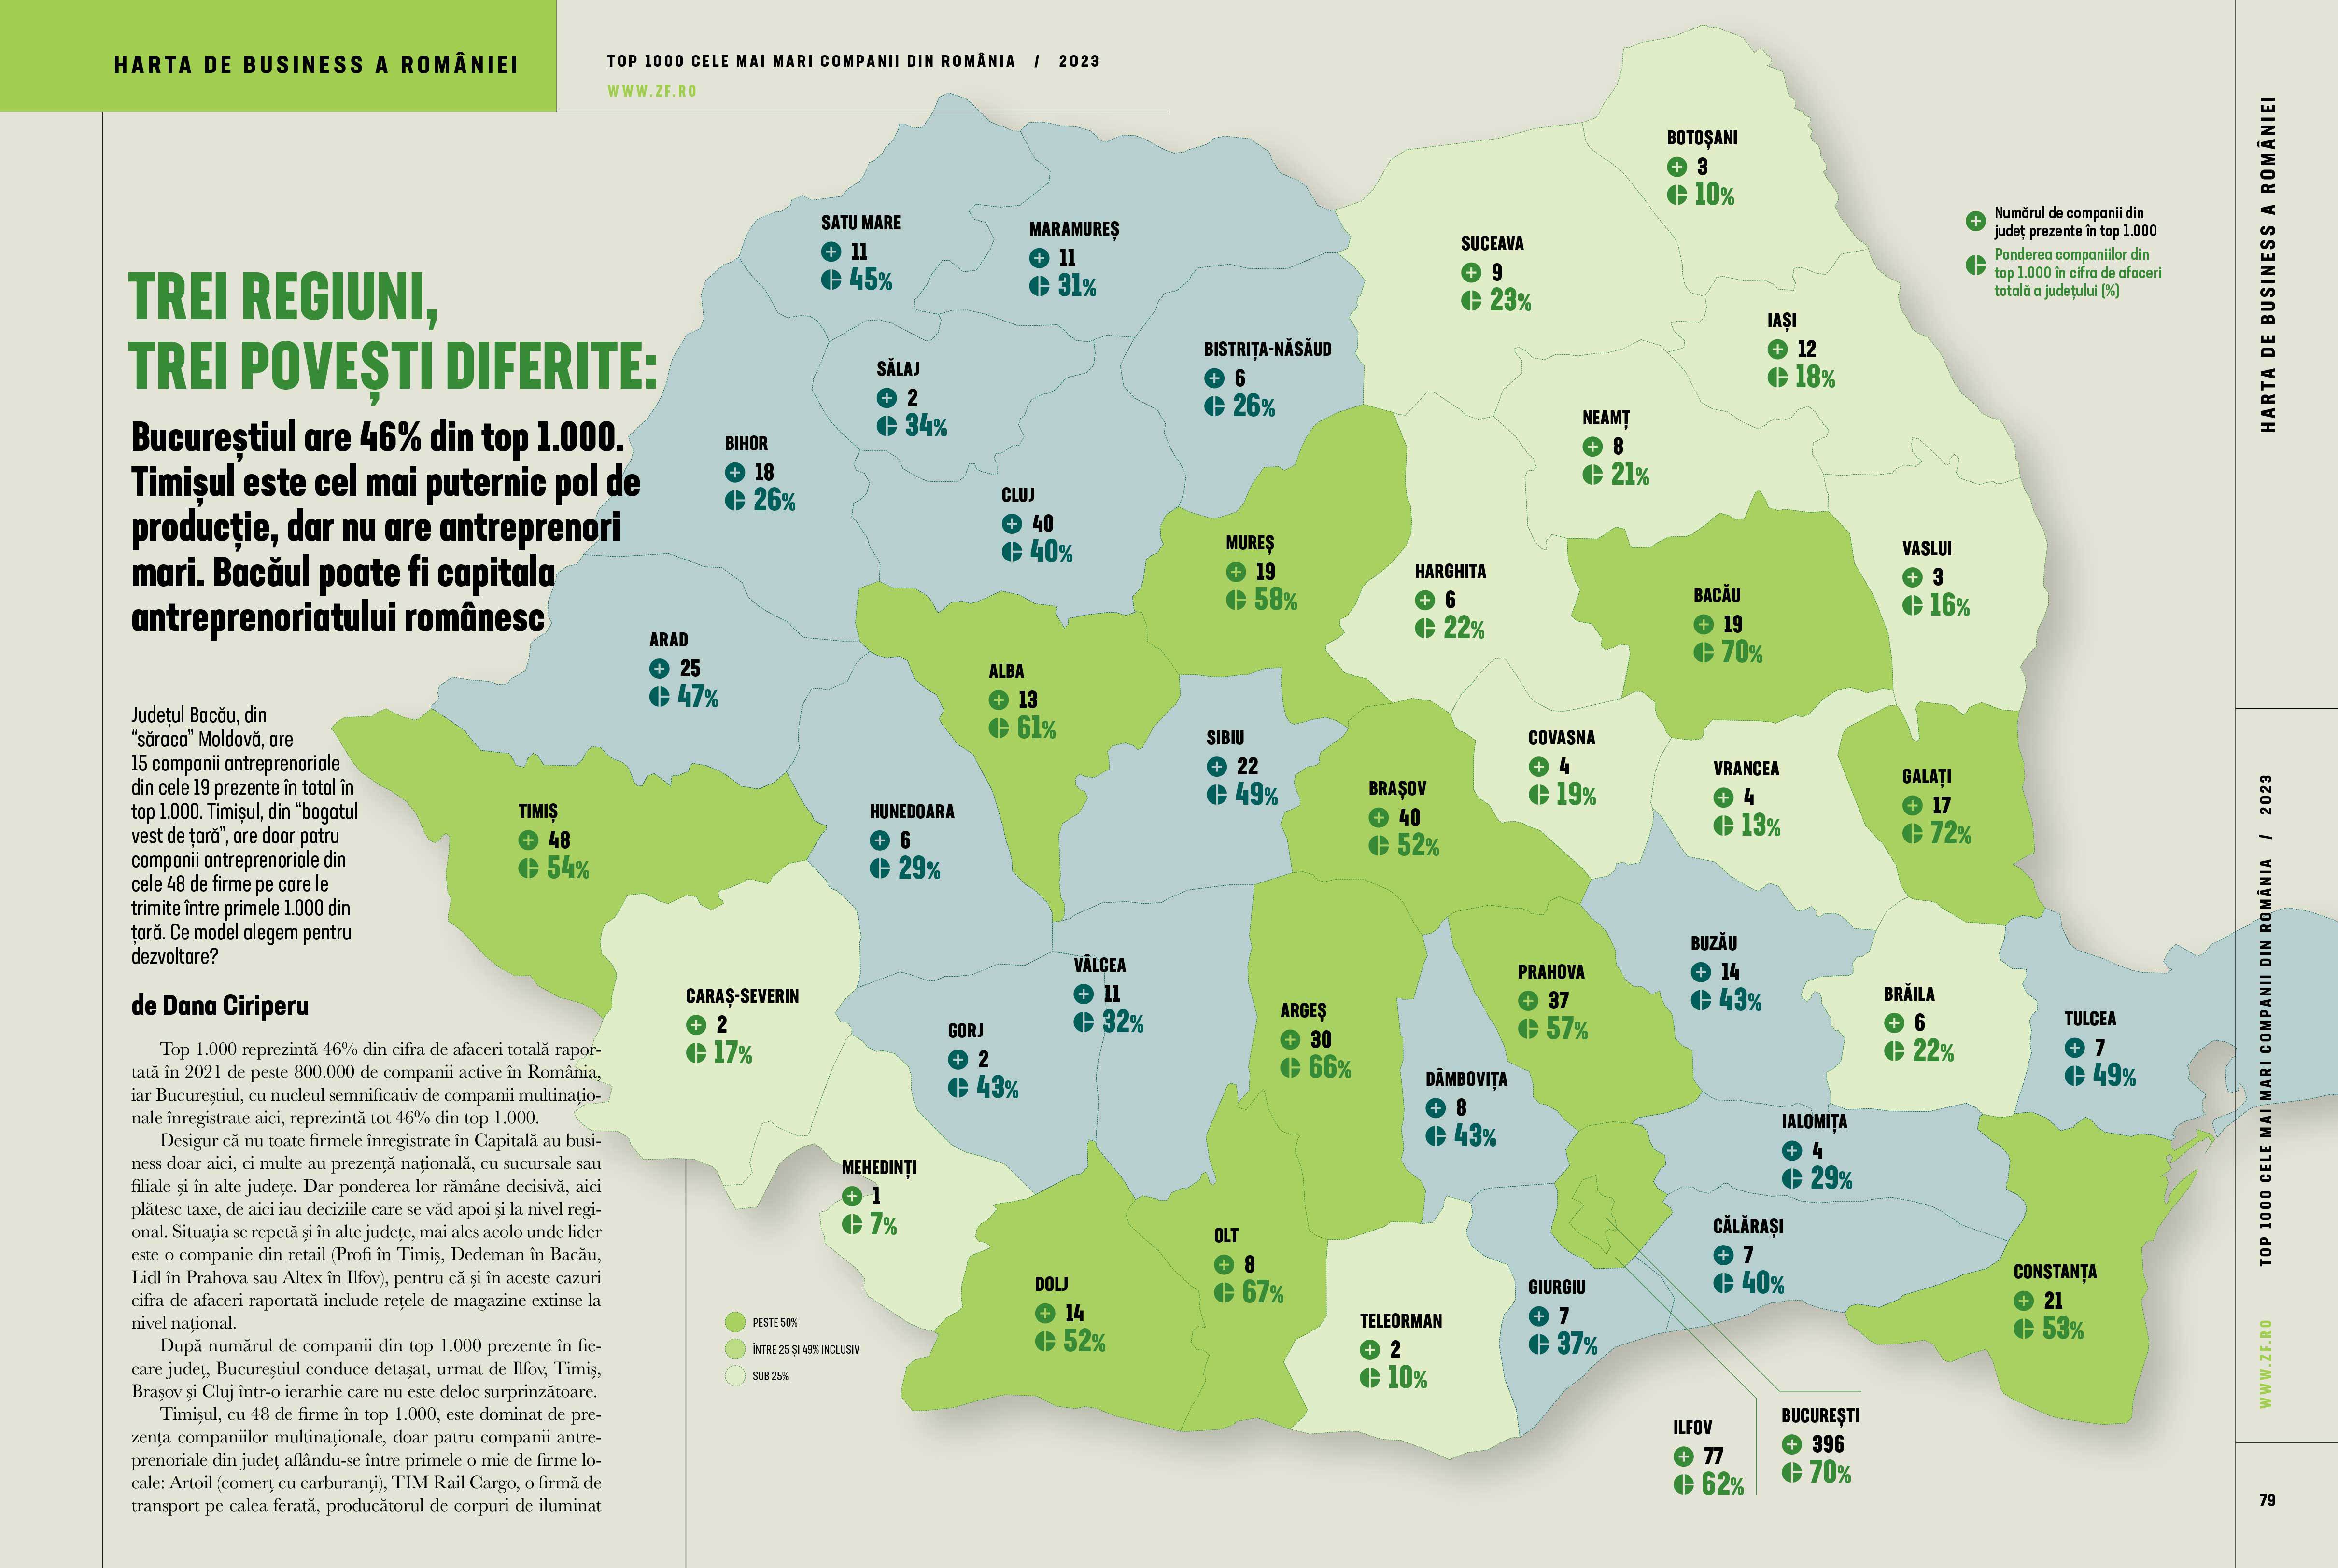 Harta de business a României. Trei regiuni, trei poveşti diferite: Bucureştiul are 46% din top 1.000. Timişul este cel mai puternic pol de producţie, dar nu are antreprenori mari. Bacăul poate fi capitala antreprenoriatului românesc